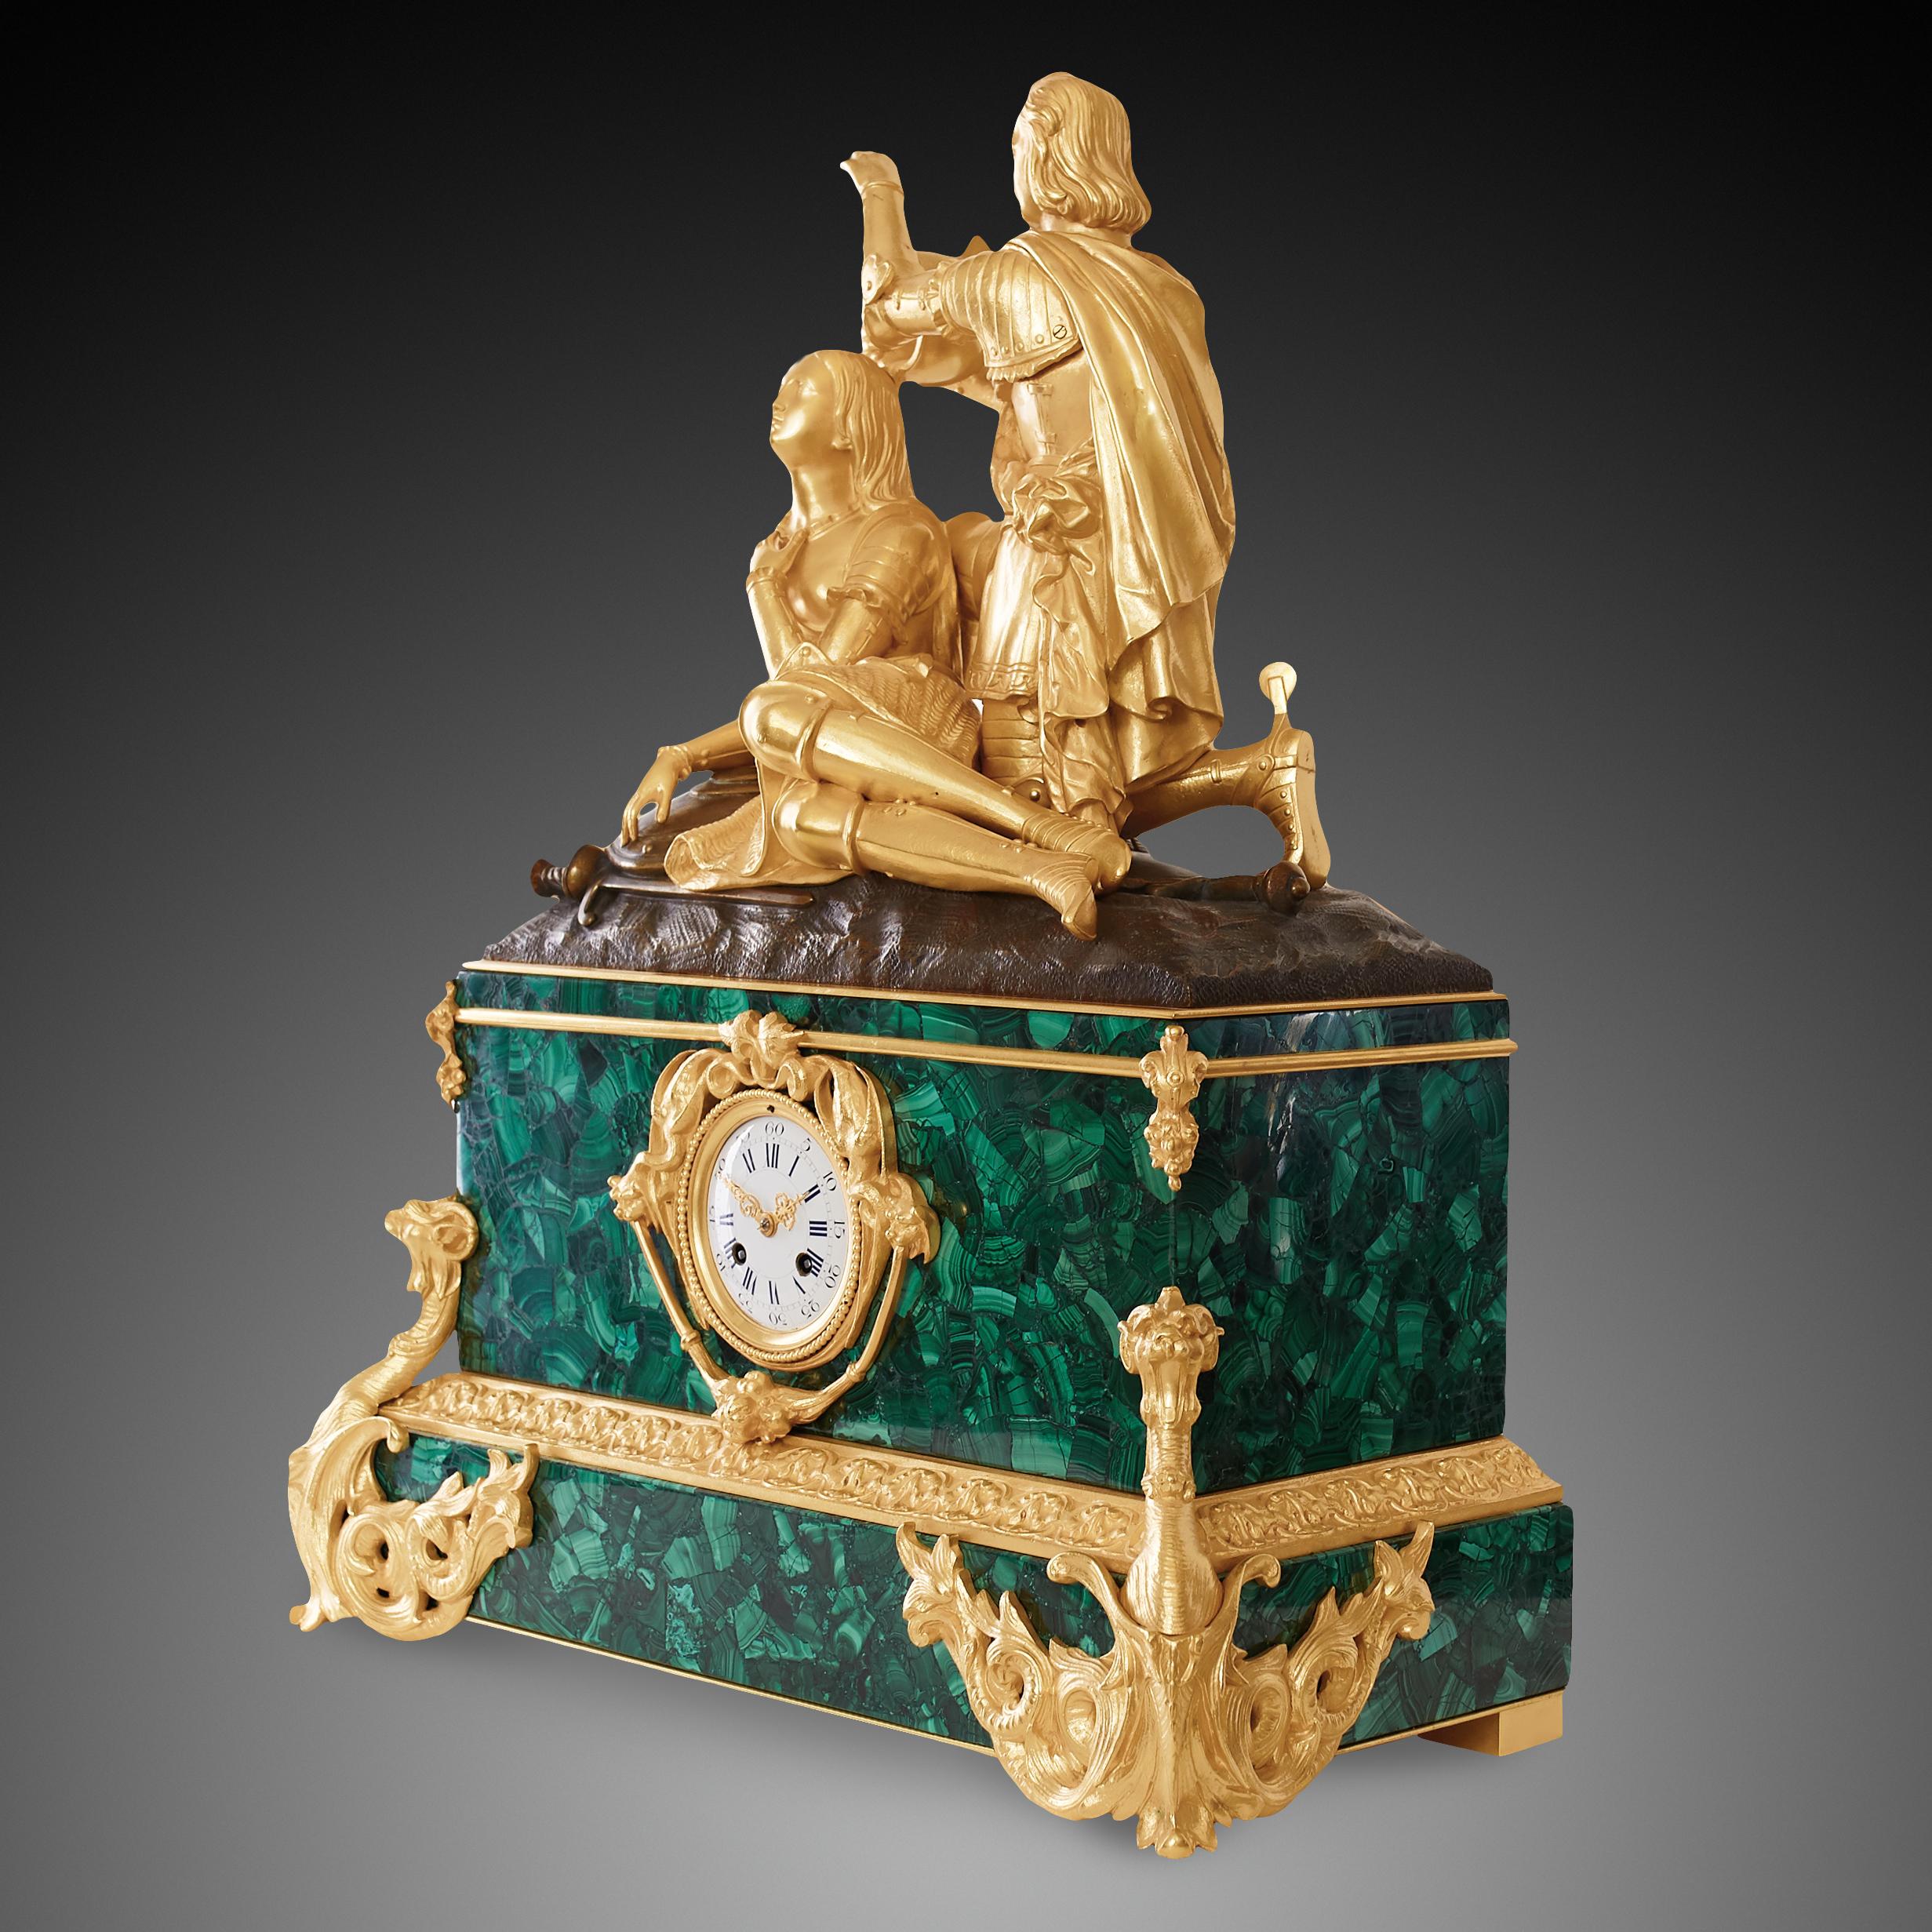 Cette horloge de cheminée est réalisée dans un style néoclassique de la période Napoléon III (1824-1830). Le piédestal de l'horloge de cheminée est fait de malachite turquoise et de bronze doré. Le malachit est bien connu pour apporter une couleur